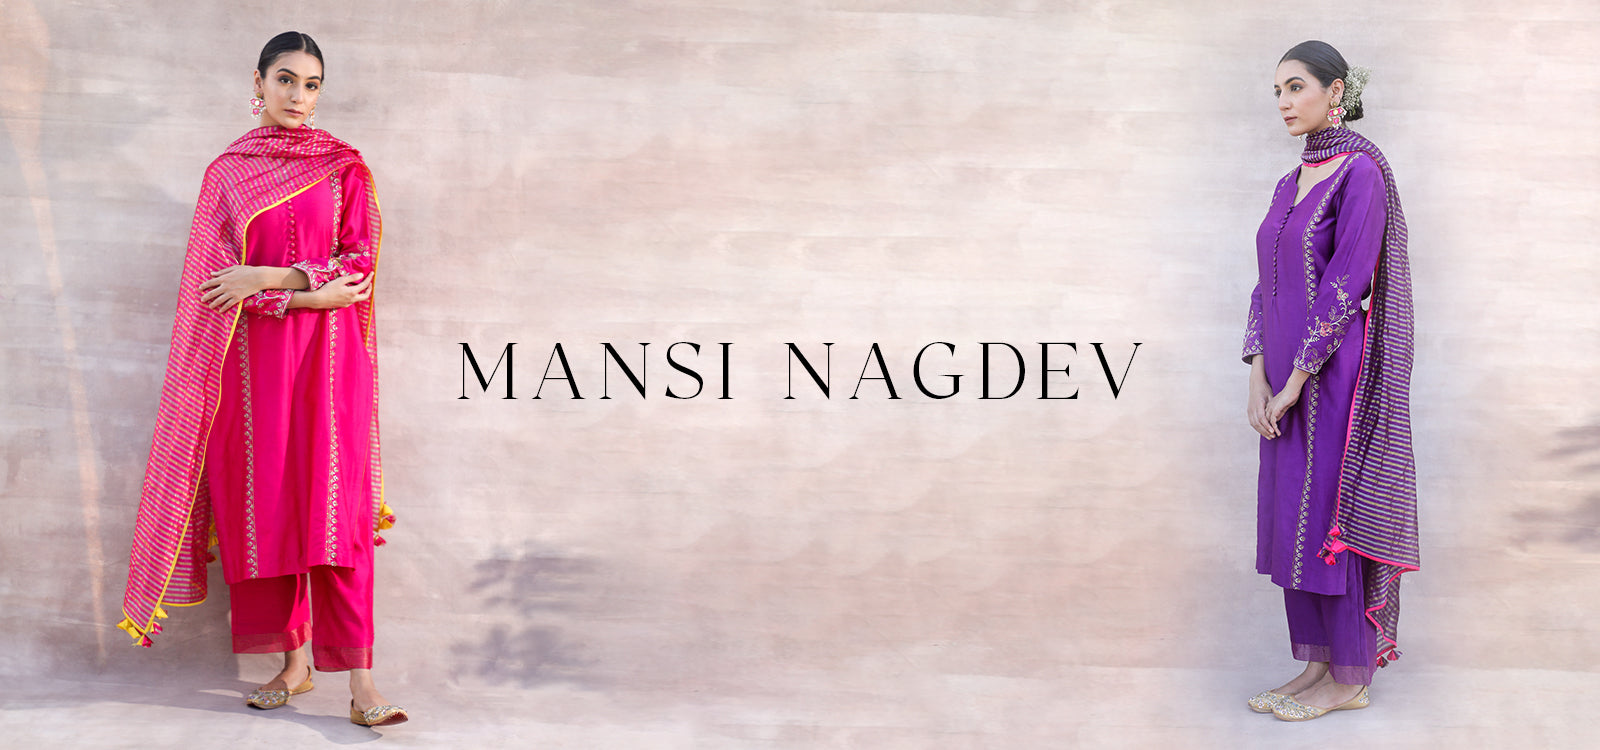 MANSI NAGDEV